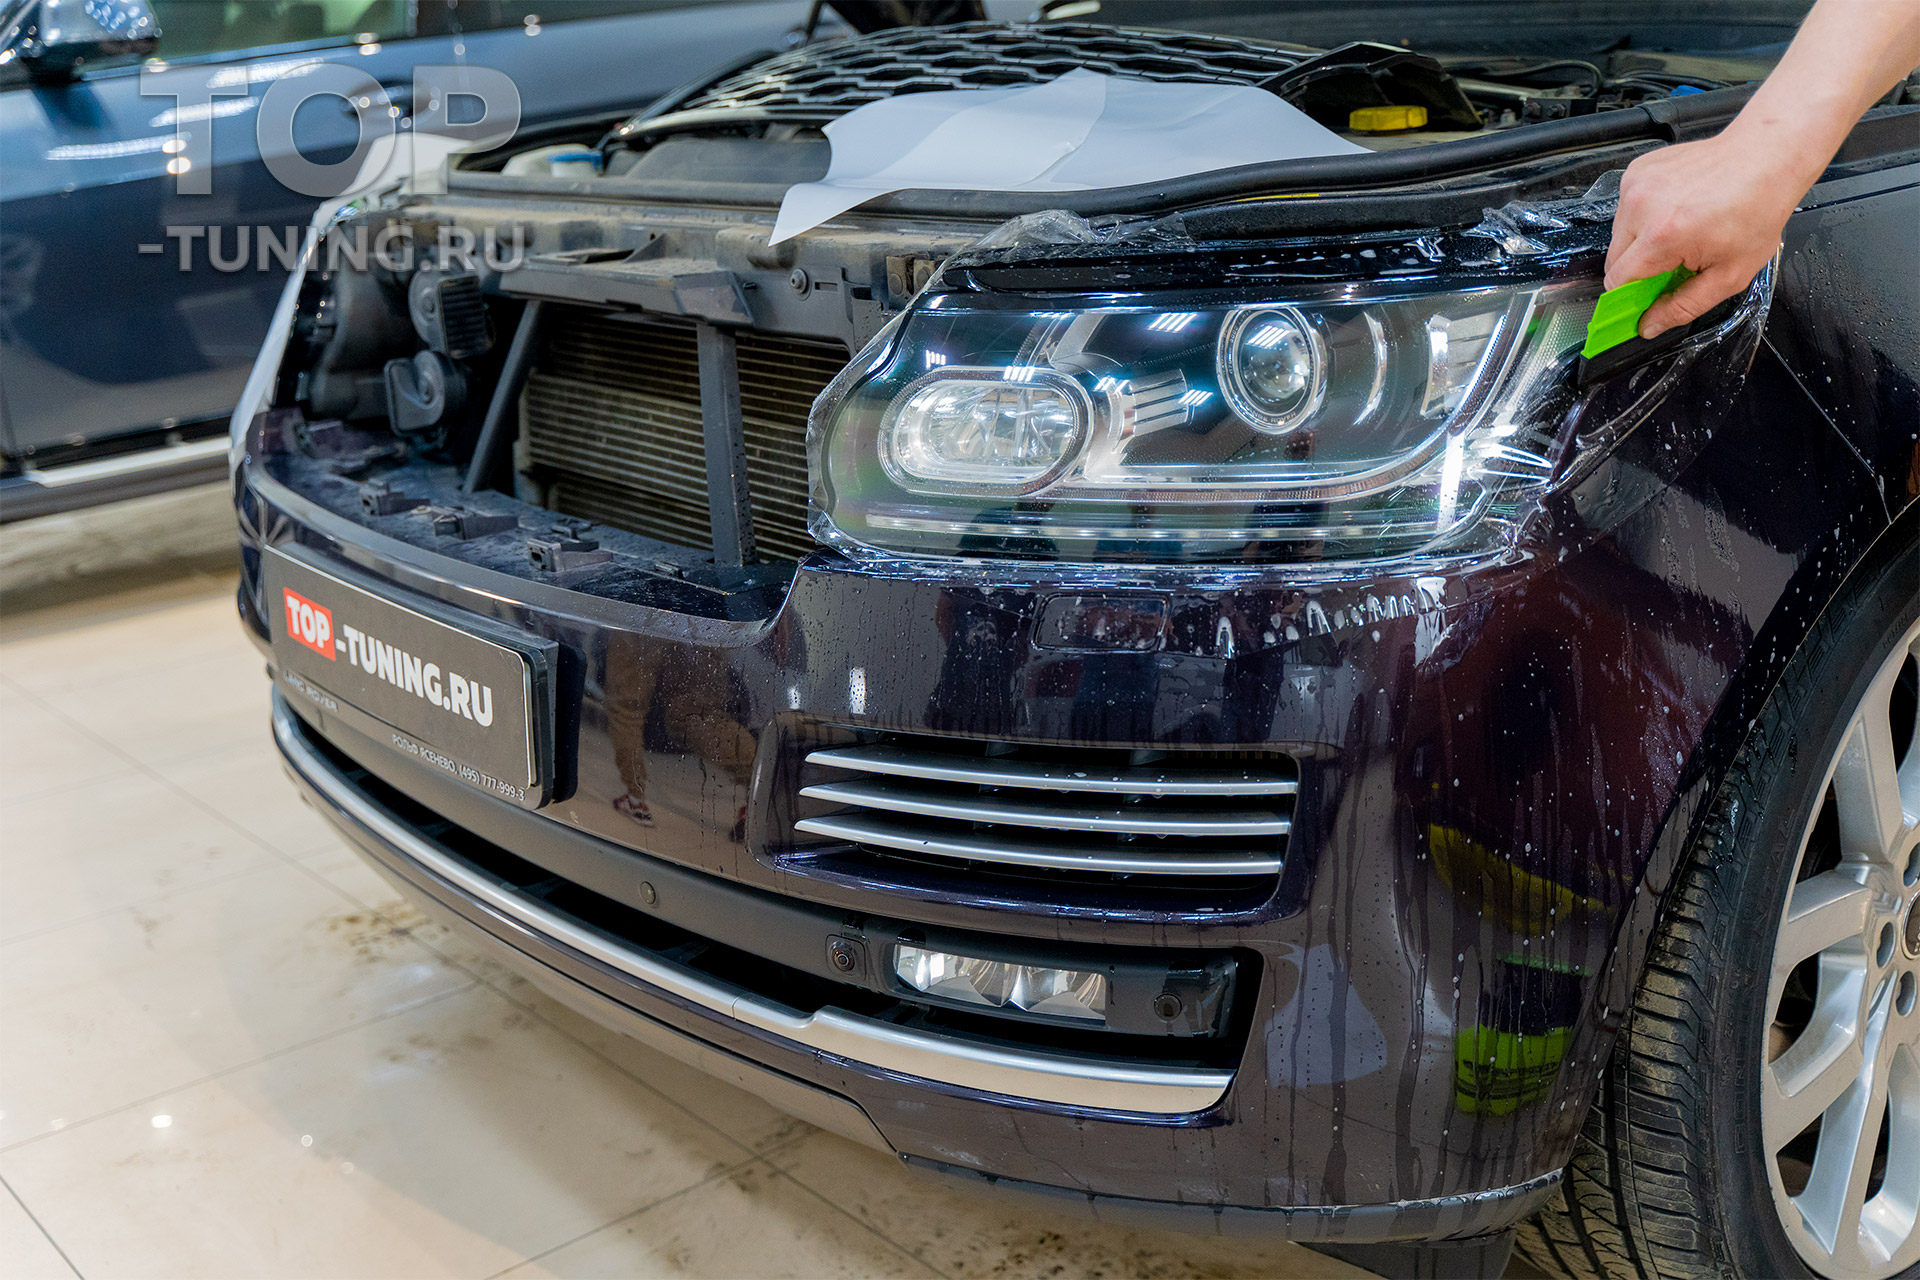 Range Rover – Пленка на фары оклейка – Максимальный уровень защиты оптики от сколов, царапин и песка